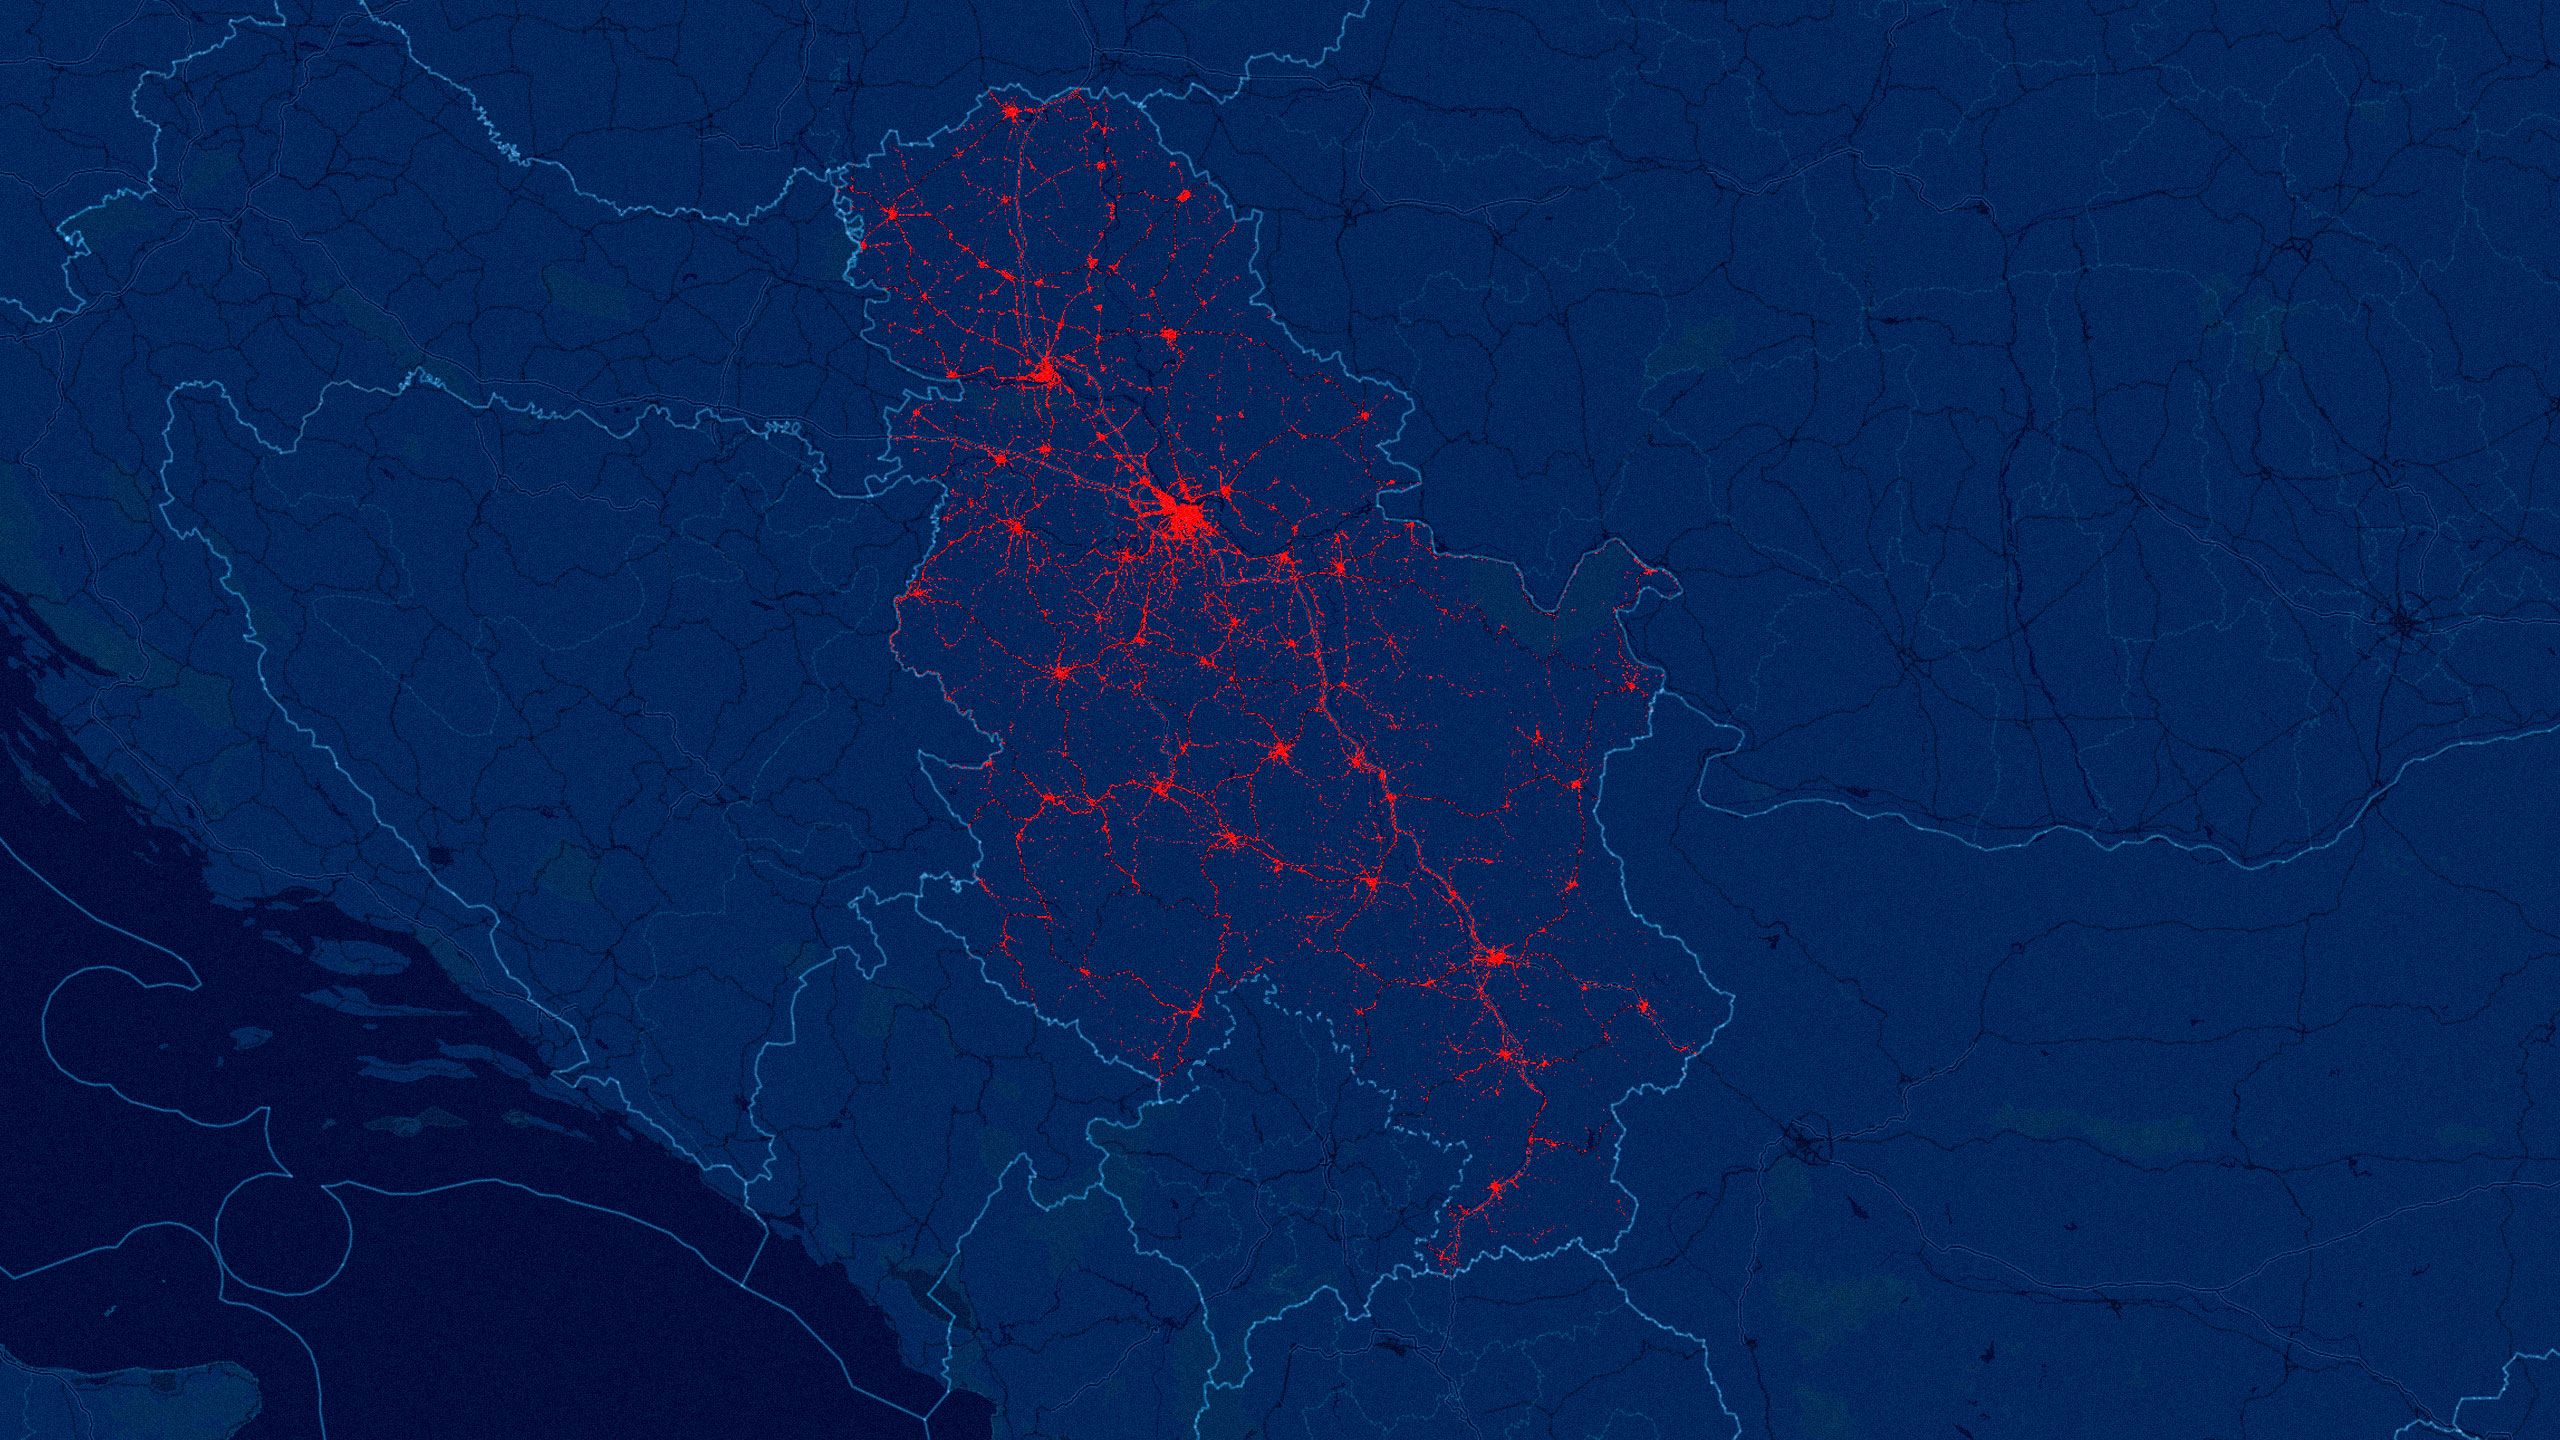 Mapa Srbije sa prikazanim svim saobraćajnim nezgodama, tamnoplava pozadina i sitne crvene tačke. Svaka crvena tačka je jedna saobraćajna nesreća. Nalik je na  prikaz krvotoka. Otud naslov: Saobraćajni krvotok Srbije.